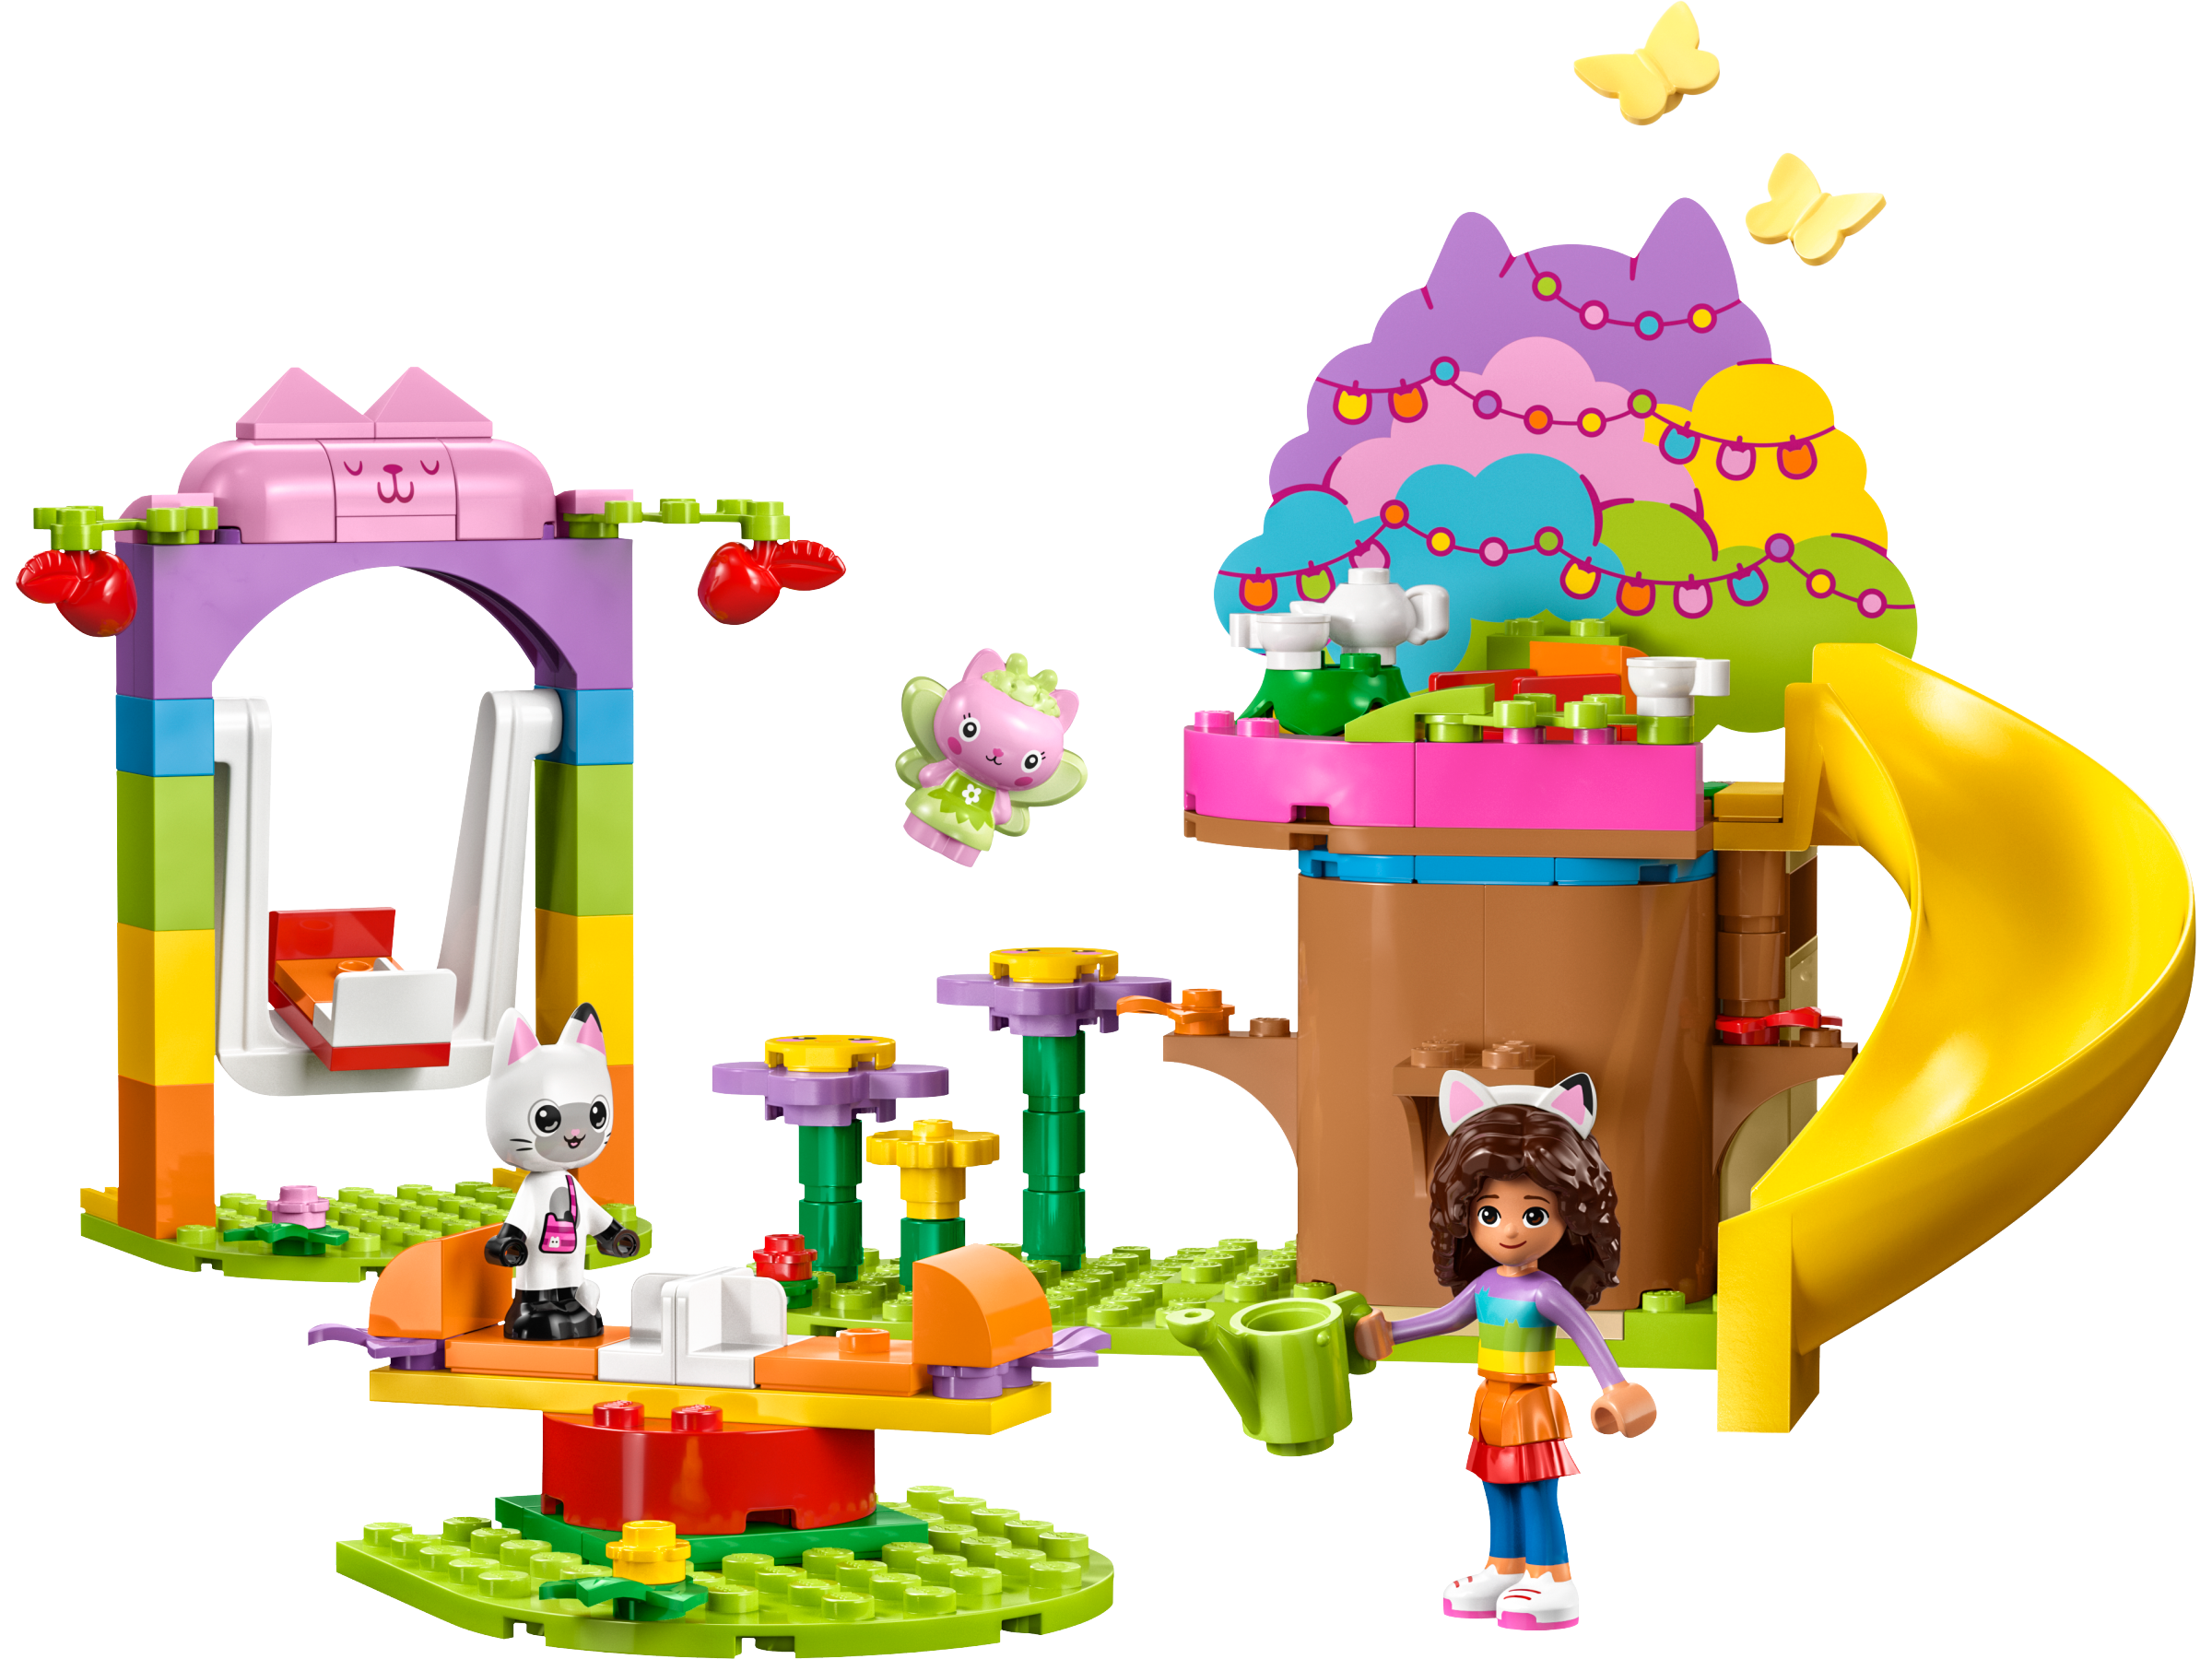 ▻ Nouveautés LEGO Gabby's Dollhouse 2023 : les visuels officiels